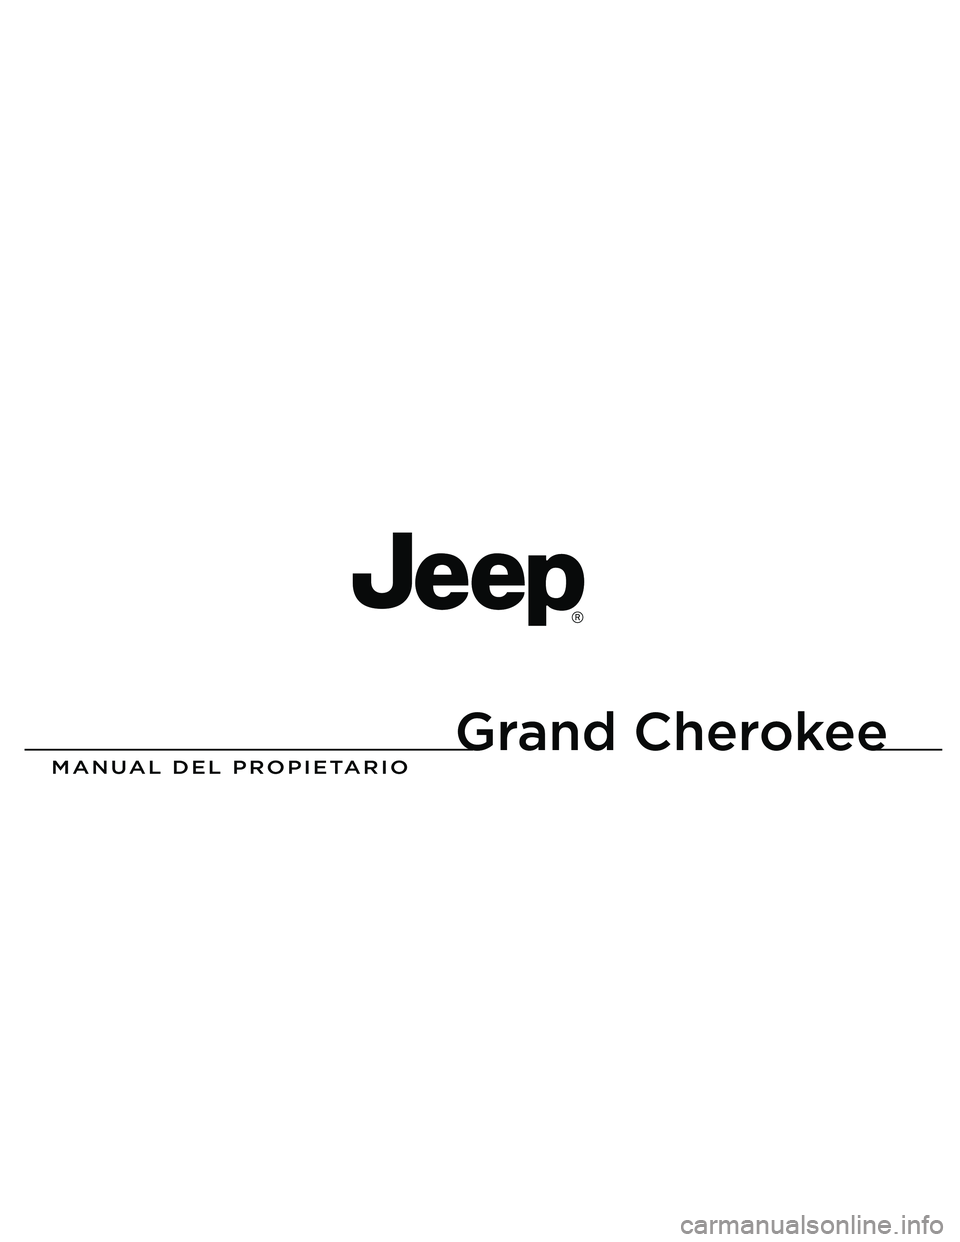 JEEP GRAND CHEROKEE 2010  Manual de Empleo y Cuidado (in Spanish) 
Grand Cherokee

MANUAL DEL PROPIETARIO
2013 Grand Cherokee
13WK741-126-PRI-AAImpreso en EE.UU. 13 